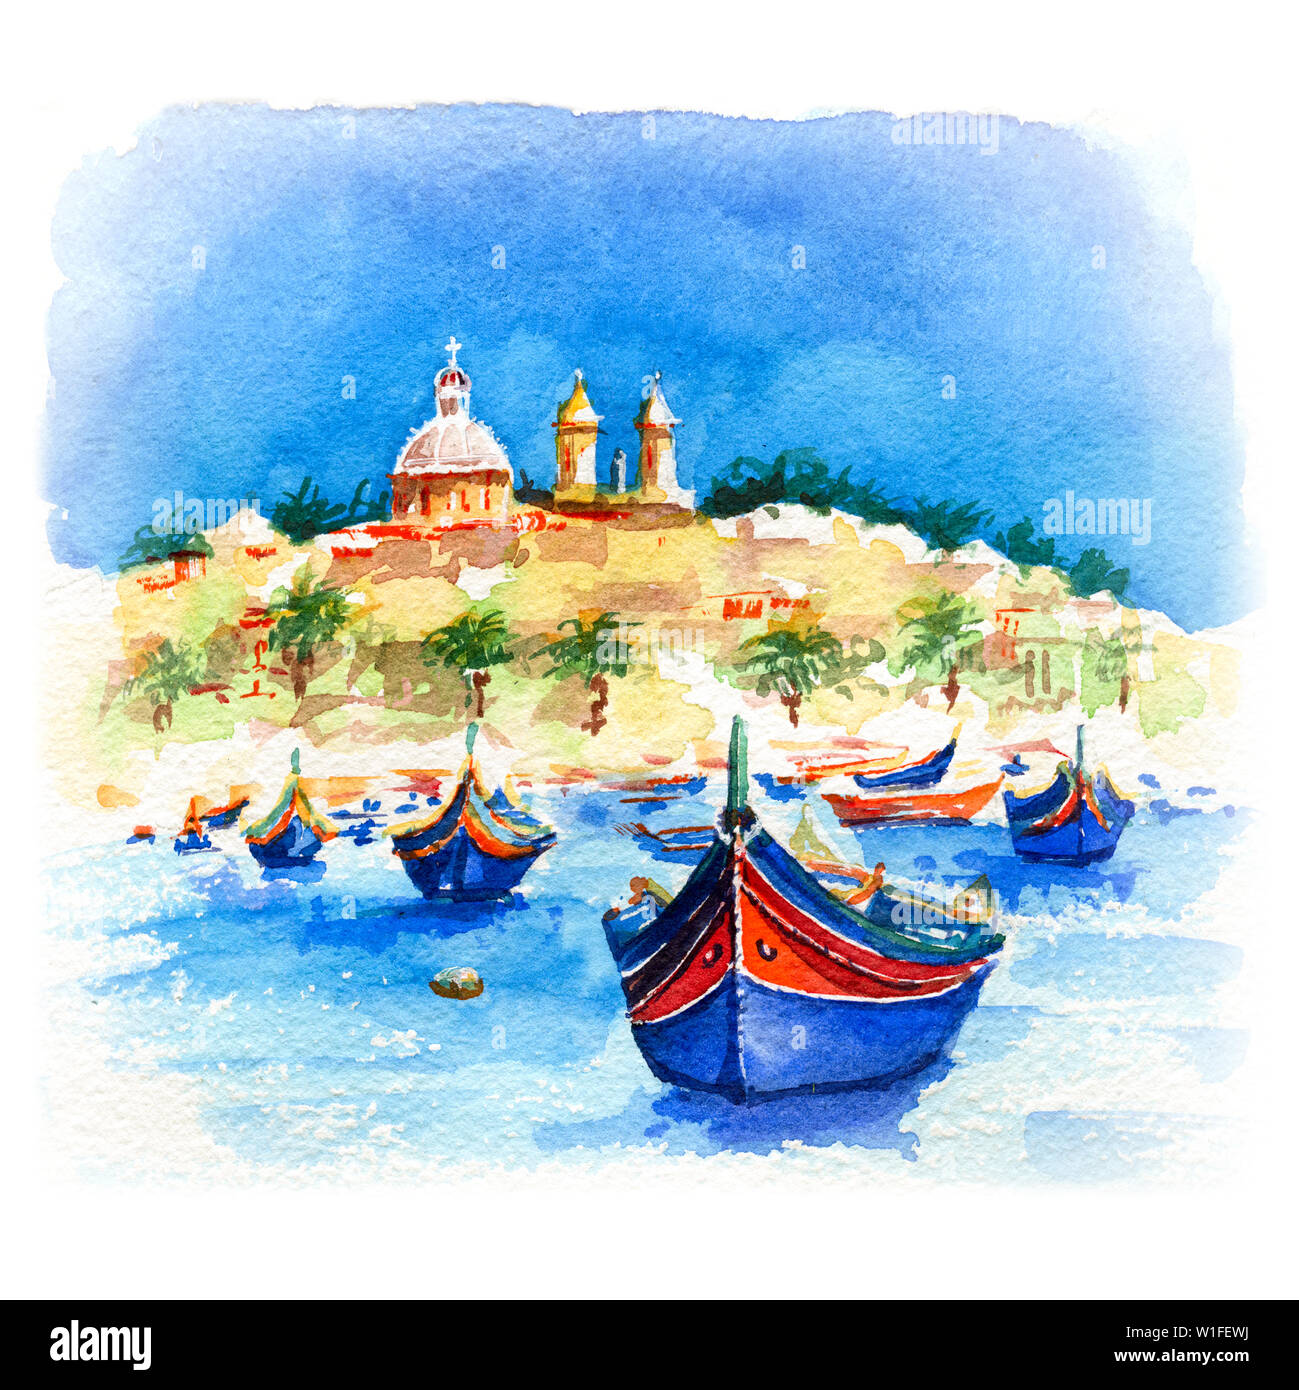 Aquarelle de eyed traditionnels bateaux colorés Luzzu et église dans le port de pêche de Marsaxlokk village méditerranéen, Malte Banque D'Images